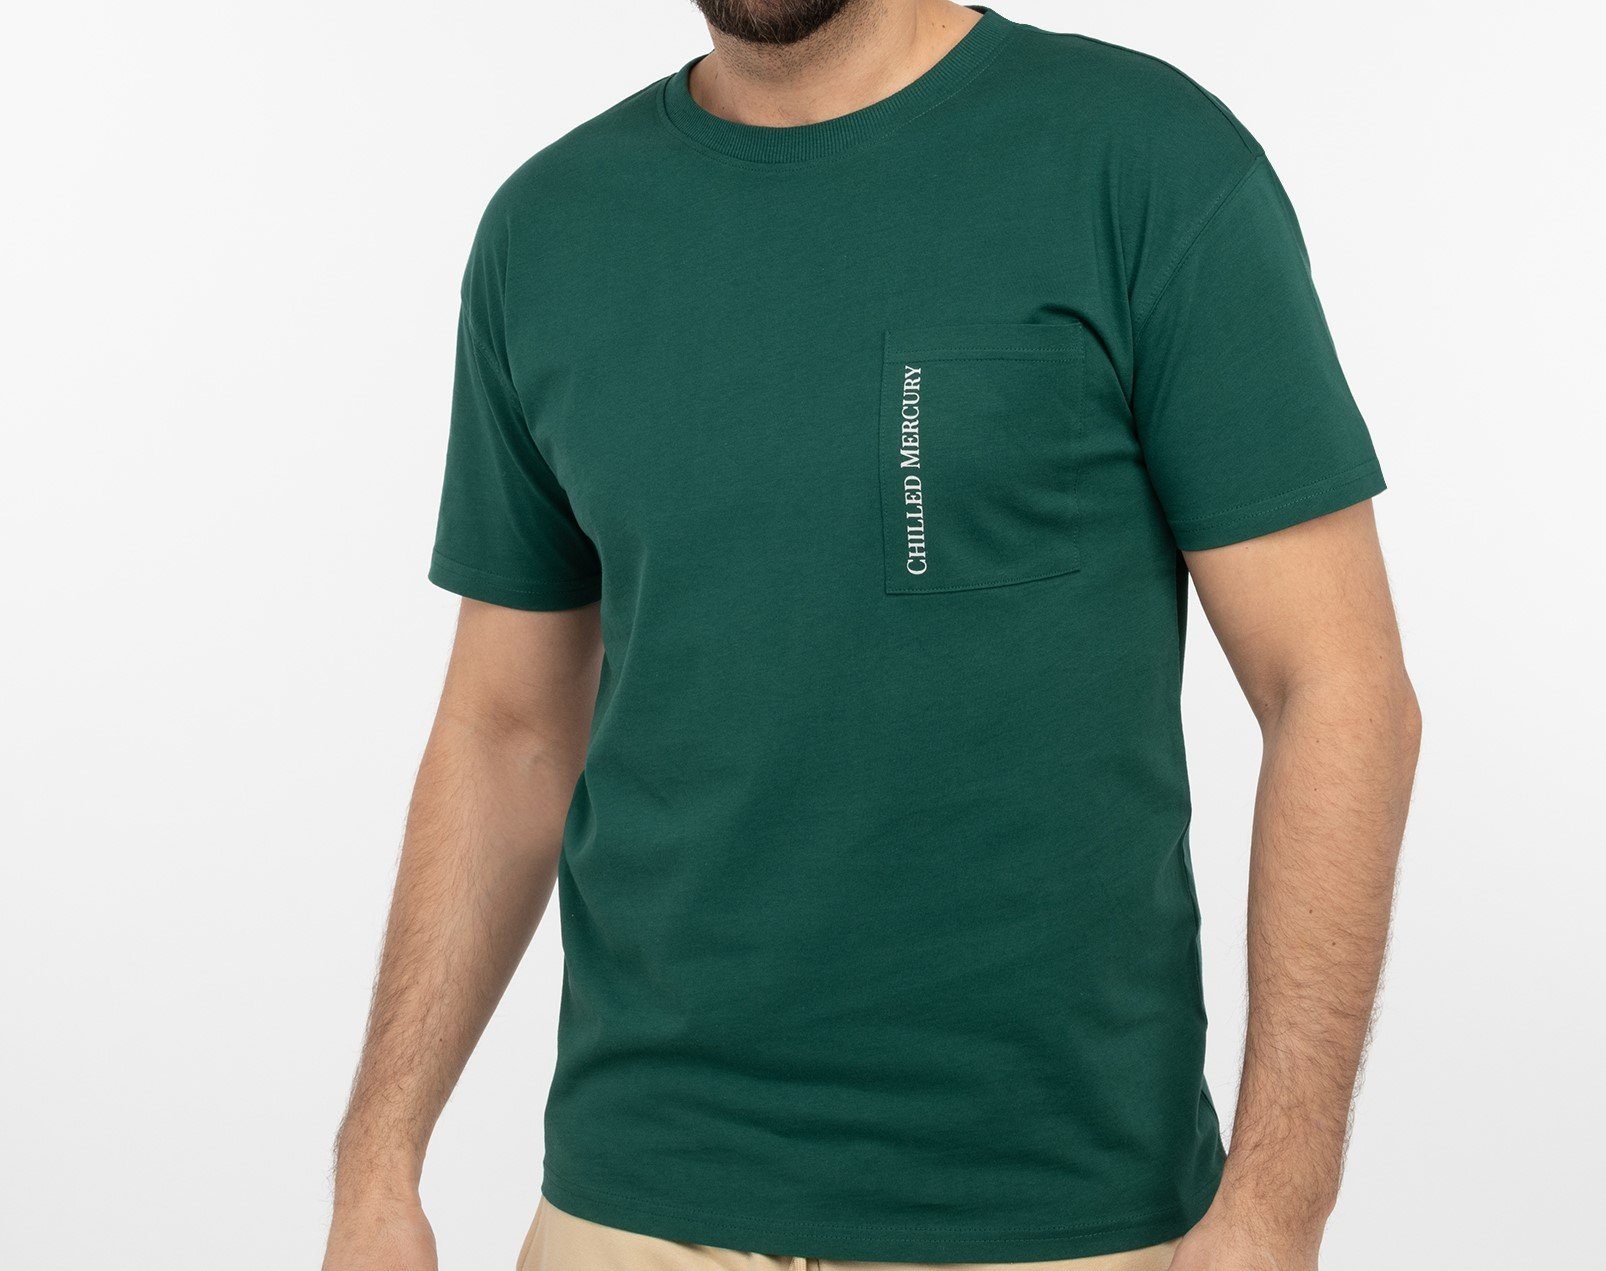 Chilled Mercury T-Shirt Baumwolle Freizeit Rundhals Shirt/ mit Brusttasche Grün